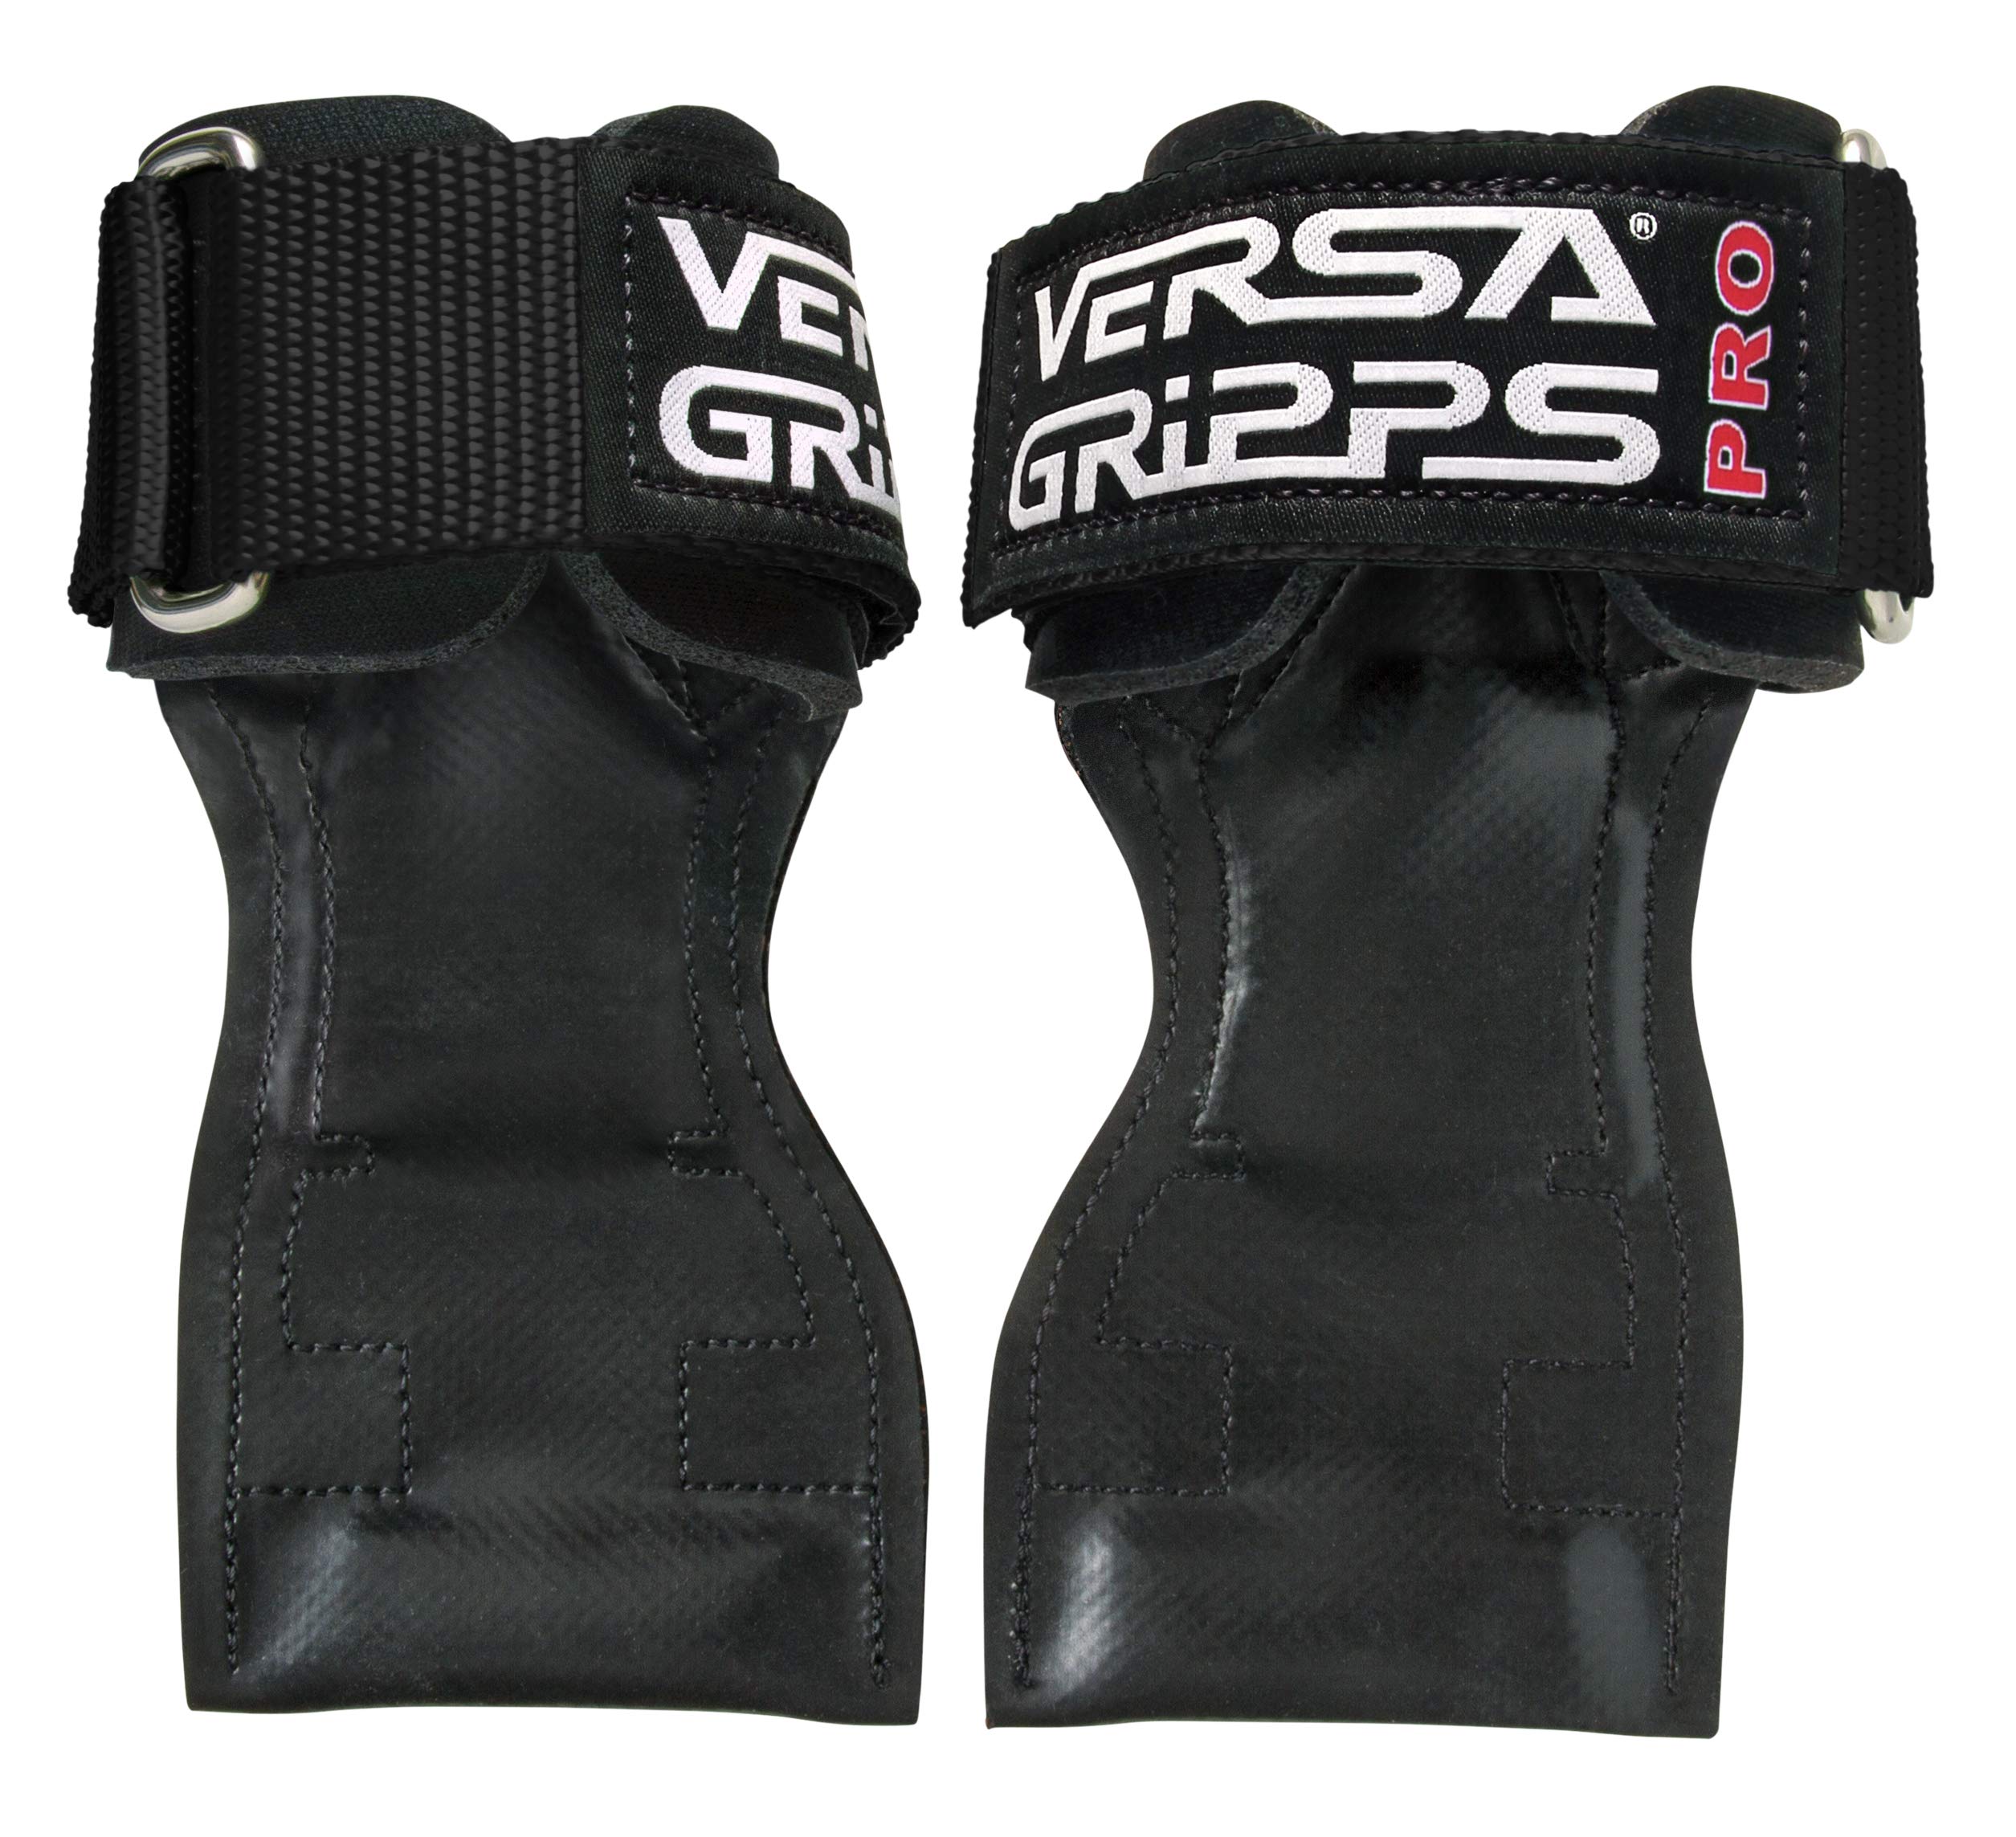 Versa Gripps PRO 正品。世界上最好的训练配件。美国制造